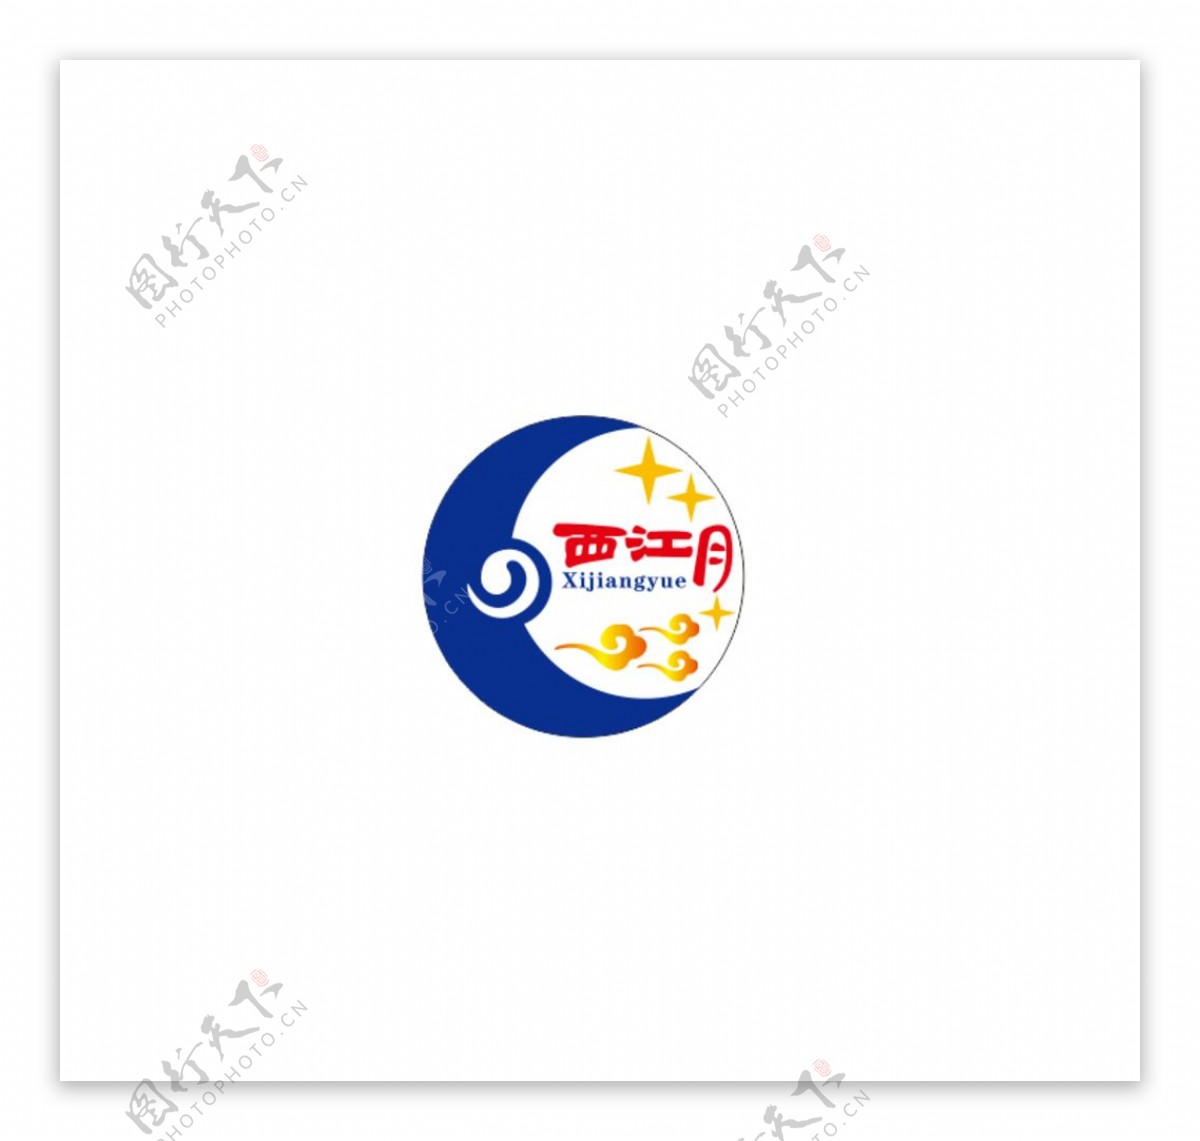 西江月logo